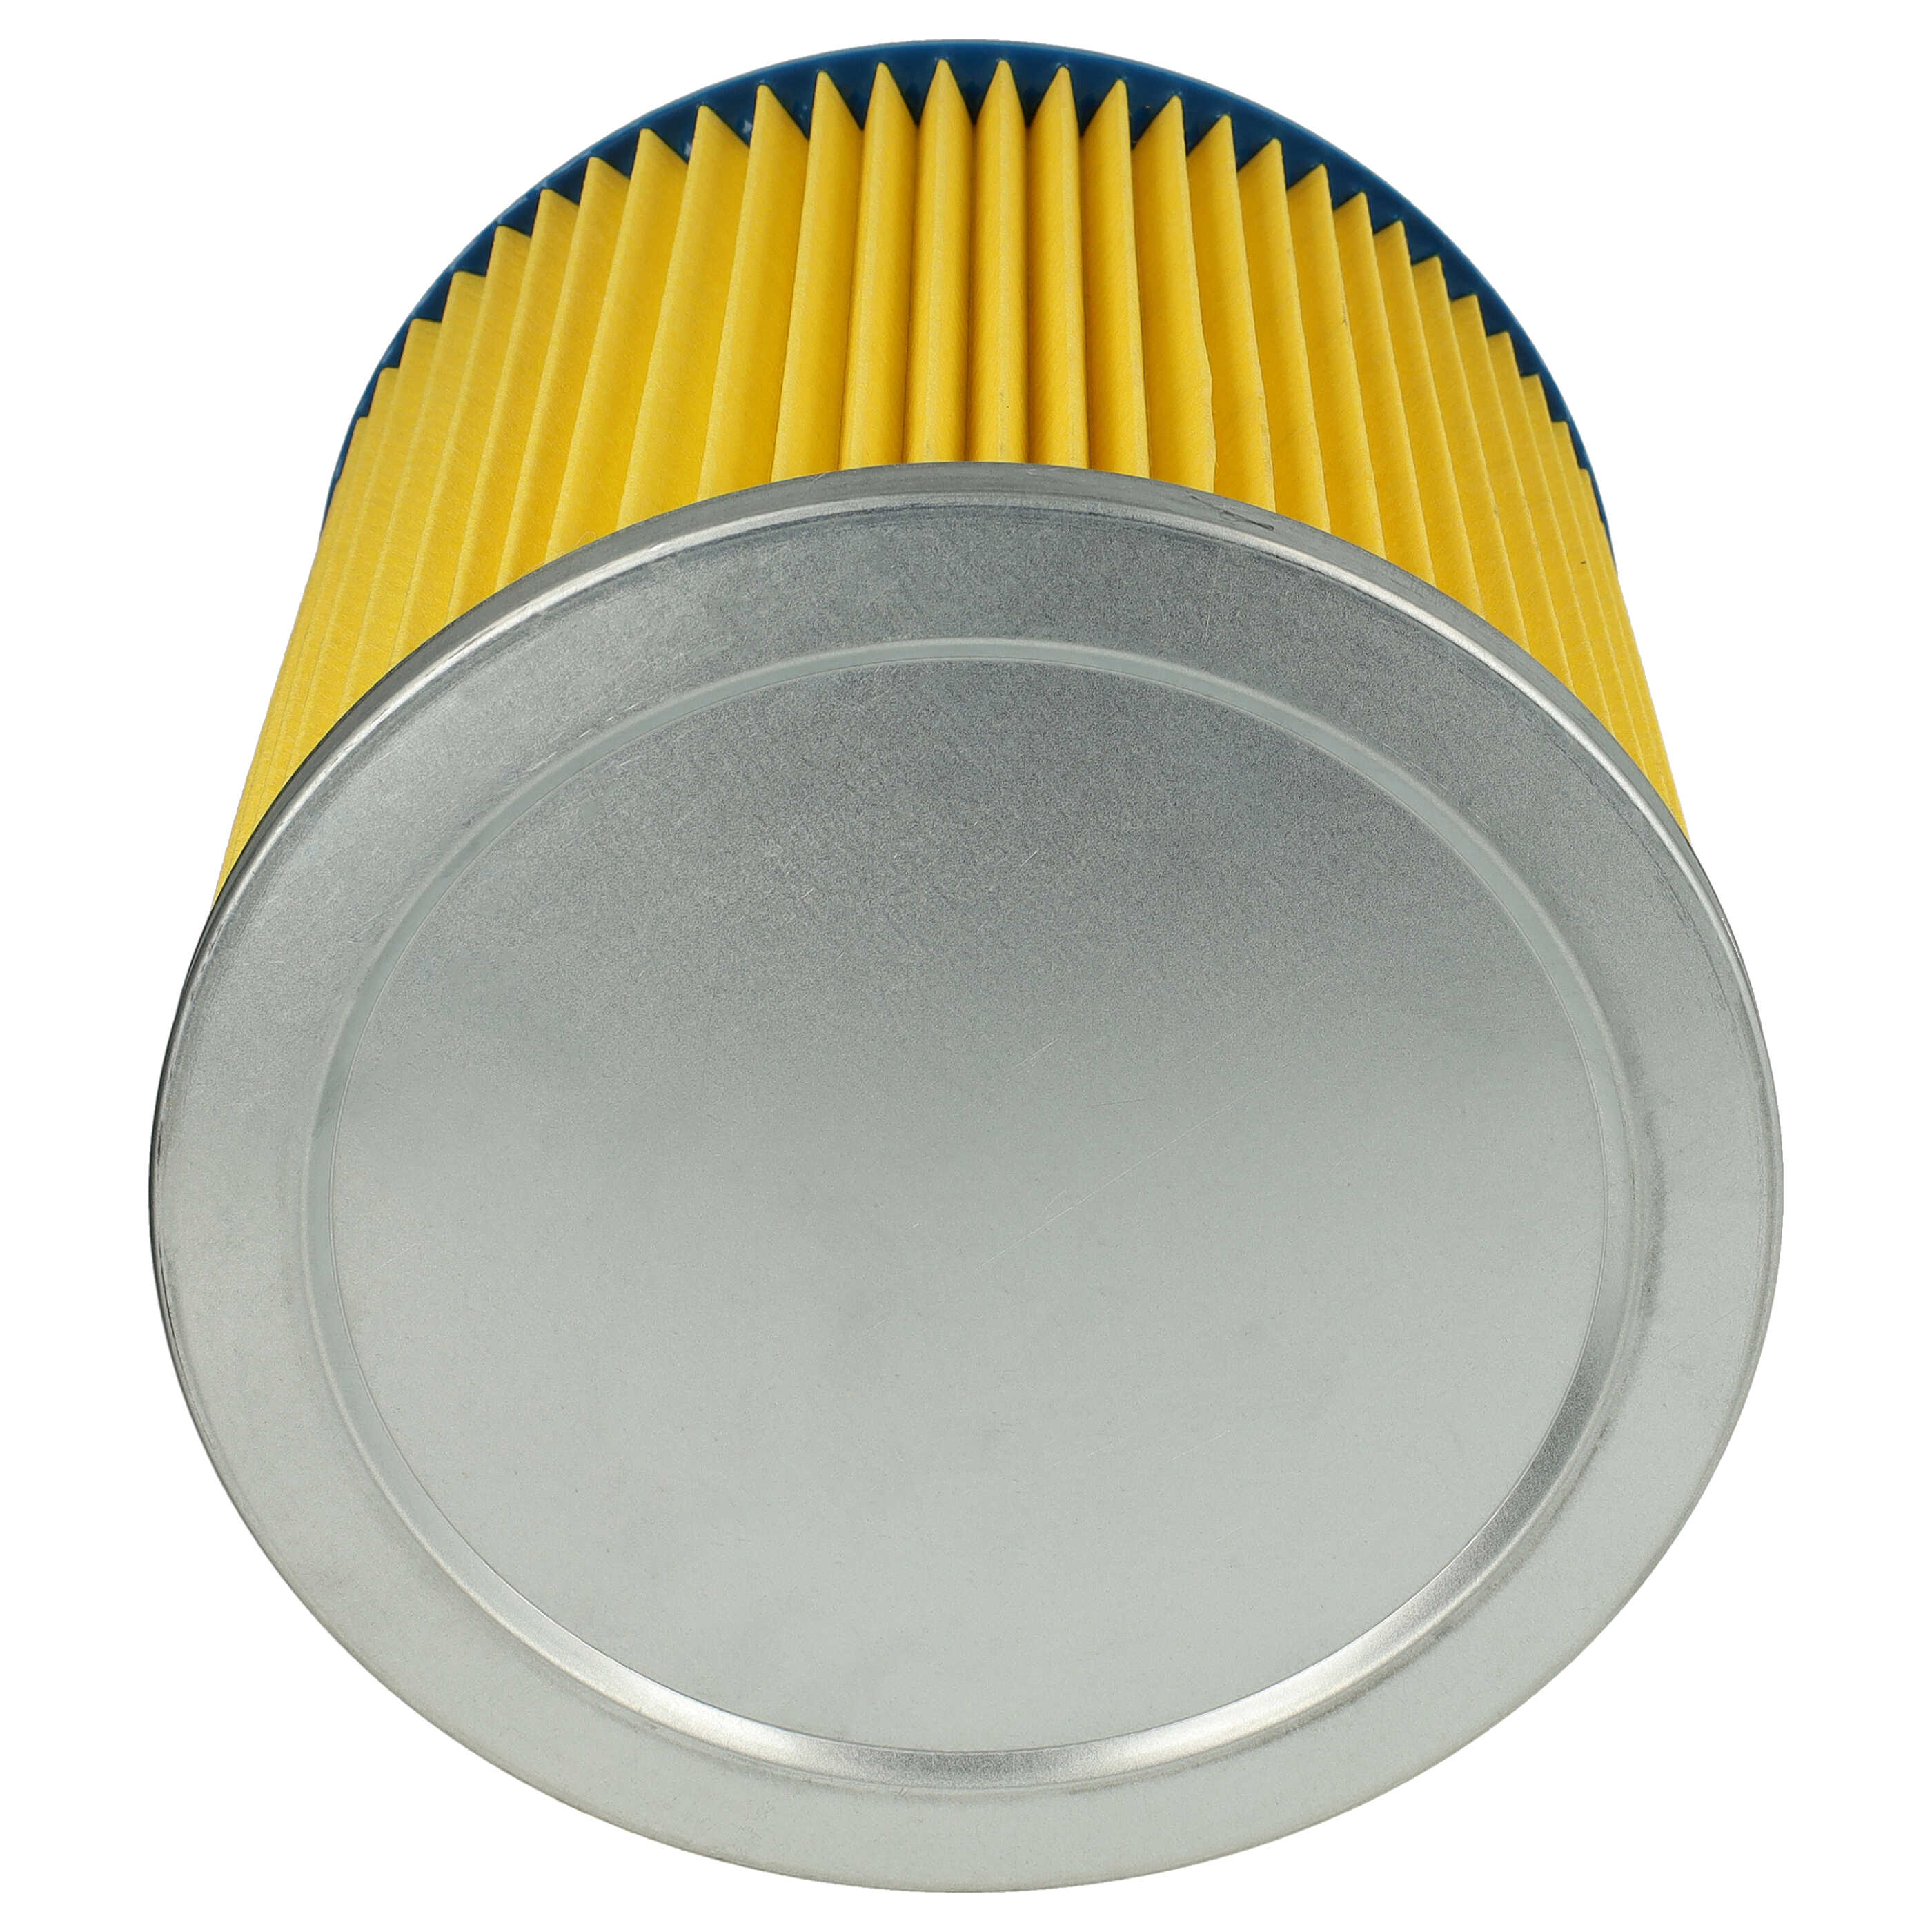 Filtr do odkurzacza Thomas zamiennik Einhell 2351110 - wkład filtracyjny, niebieski / żółty